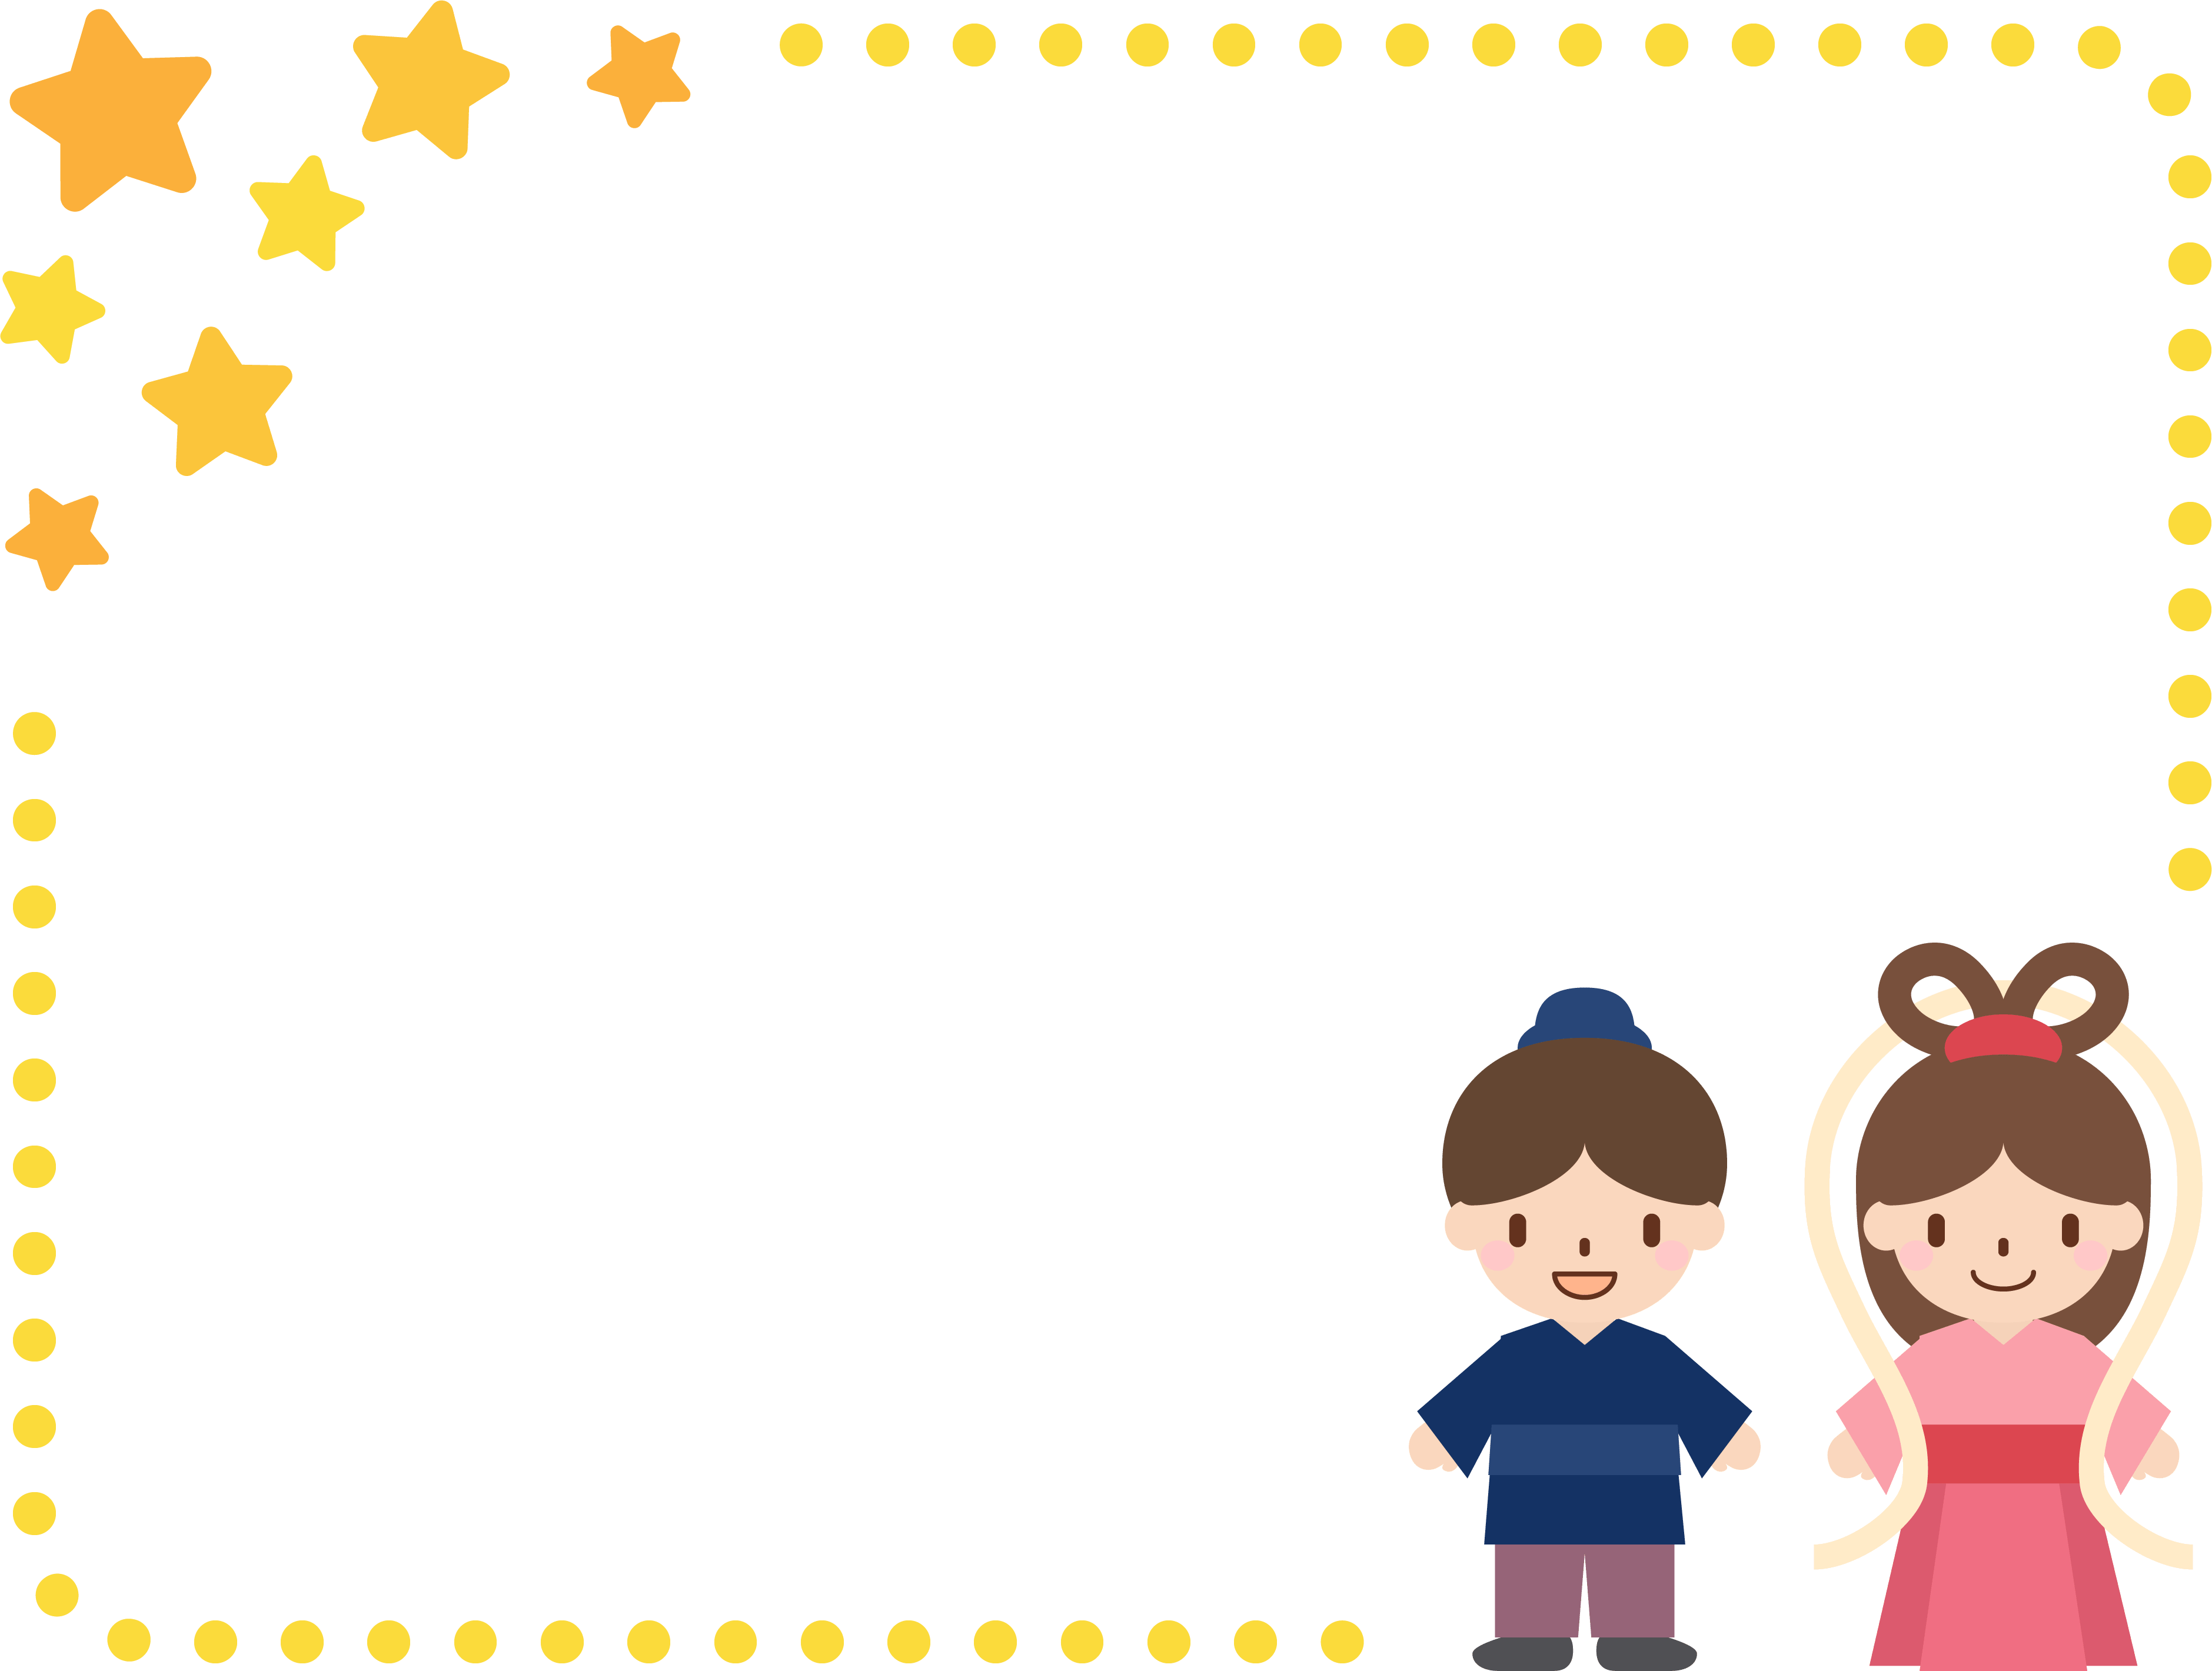 七夕-織姫と彦星の星と点線のフレーム飾り枠